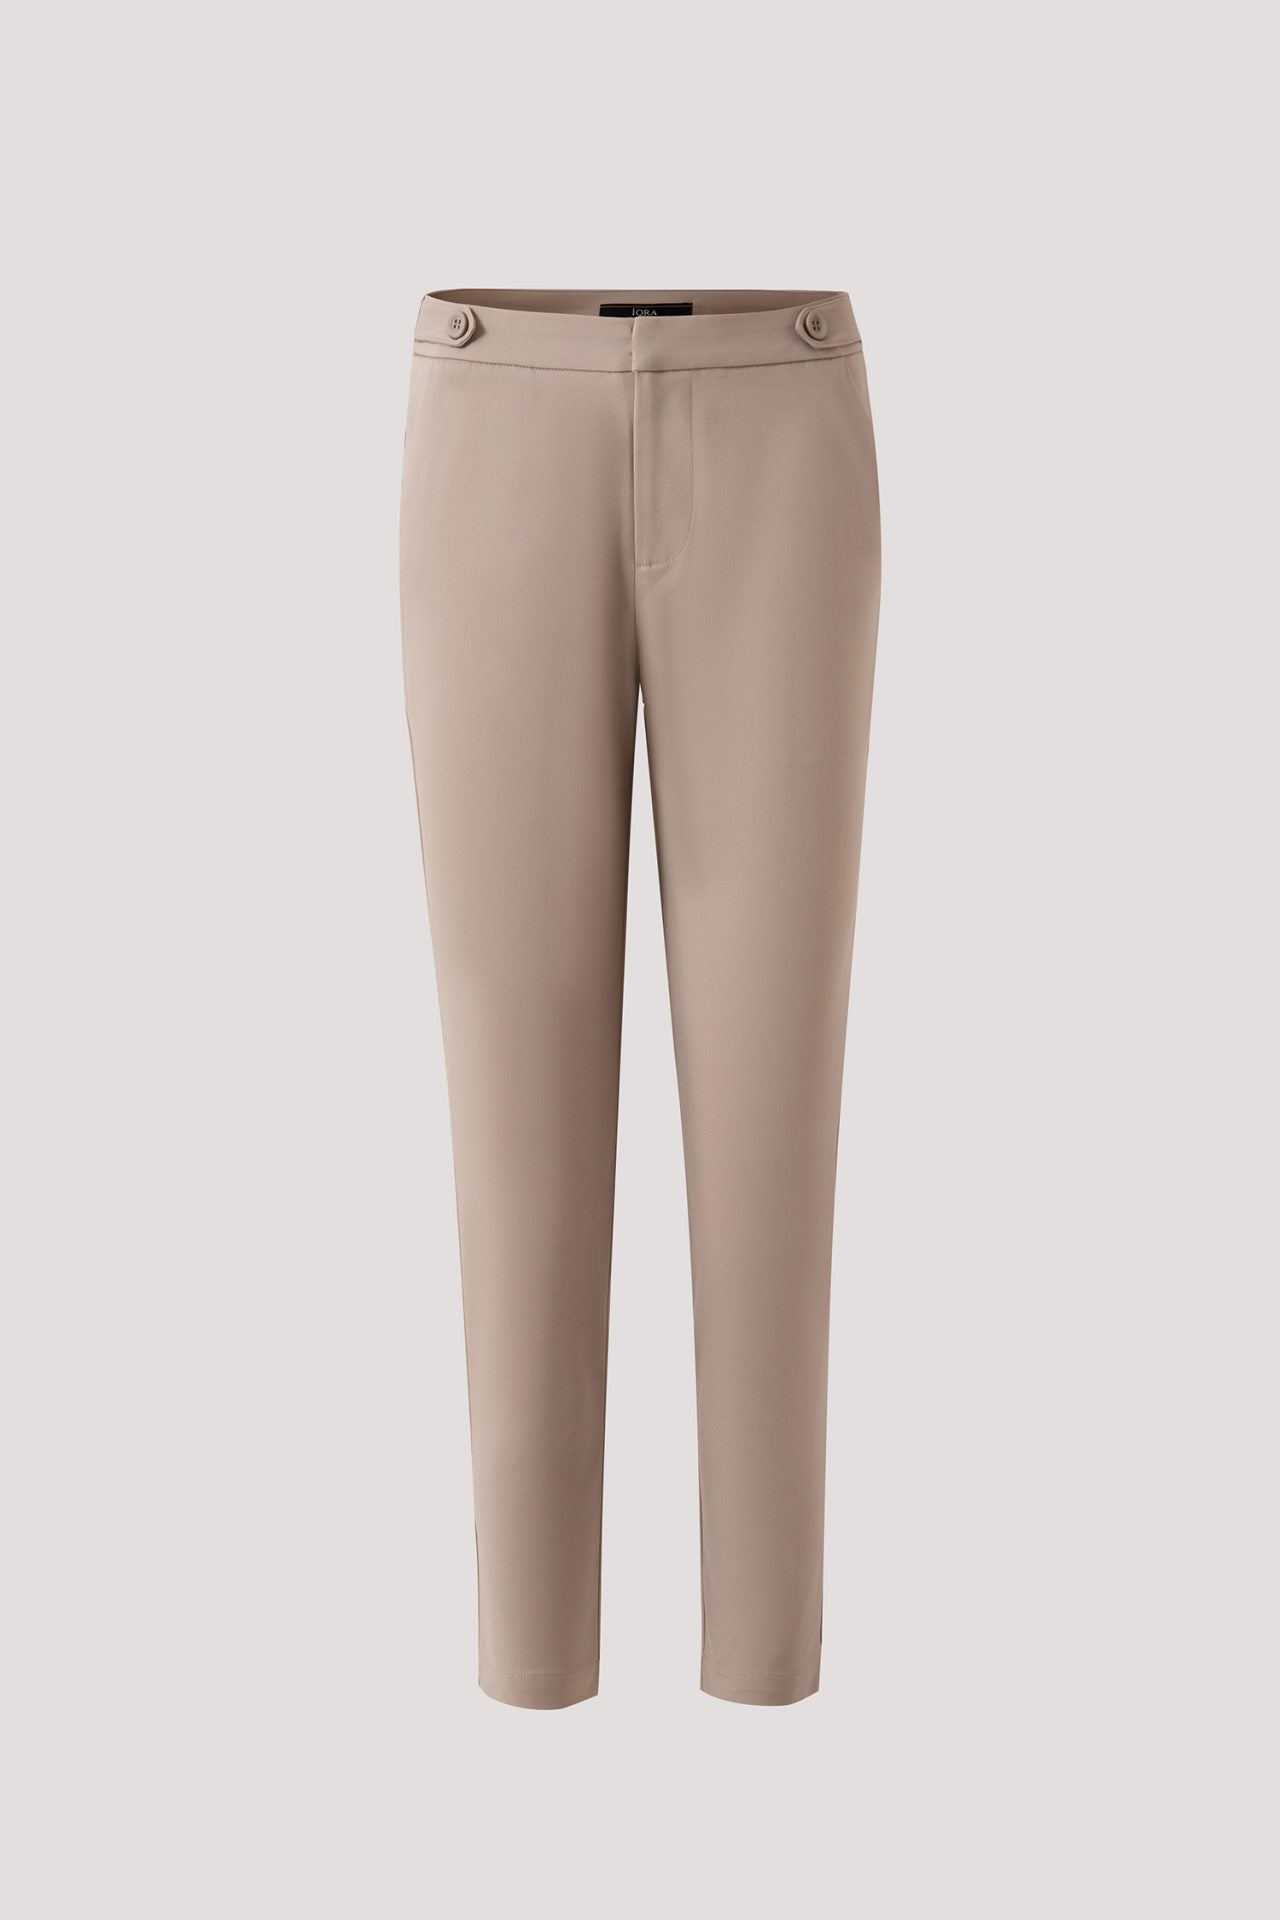 APL 5490 Long Pants Khaki Grey